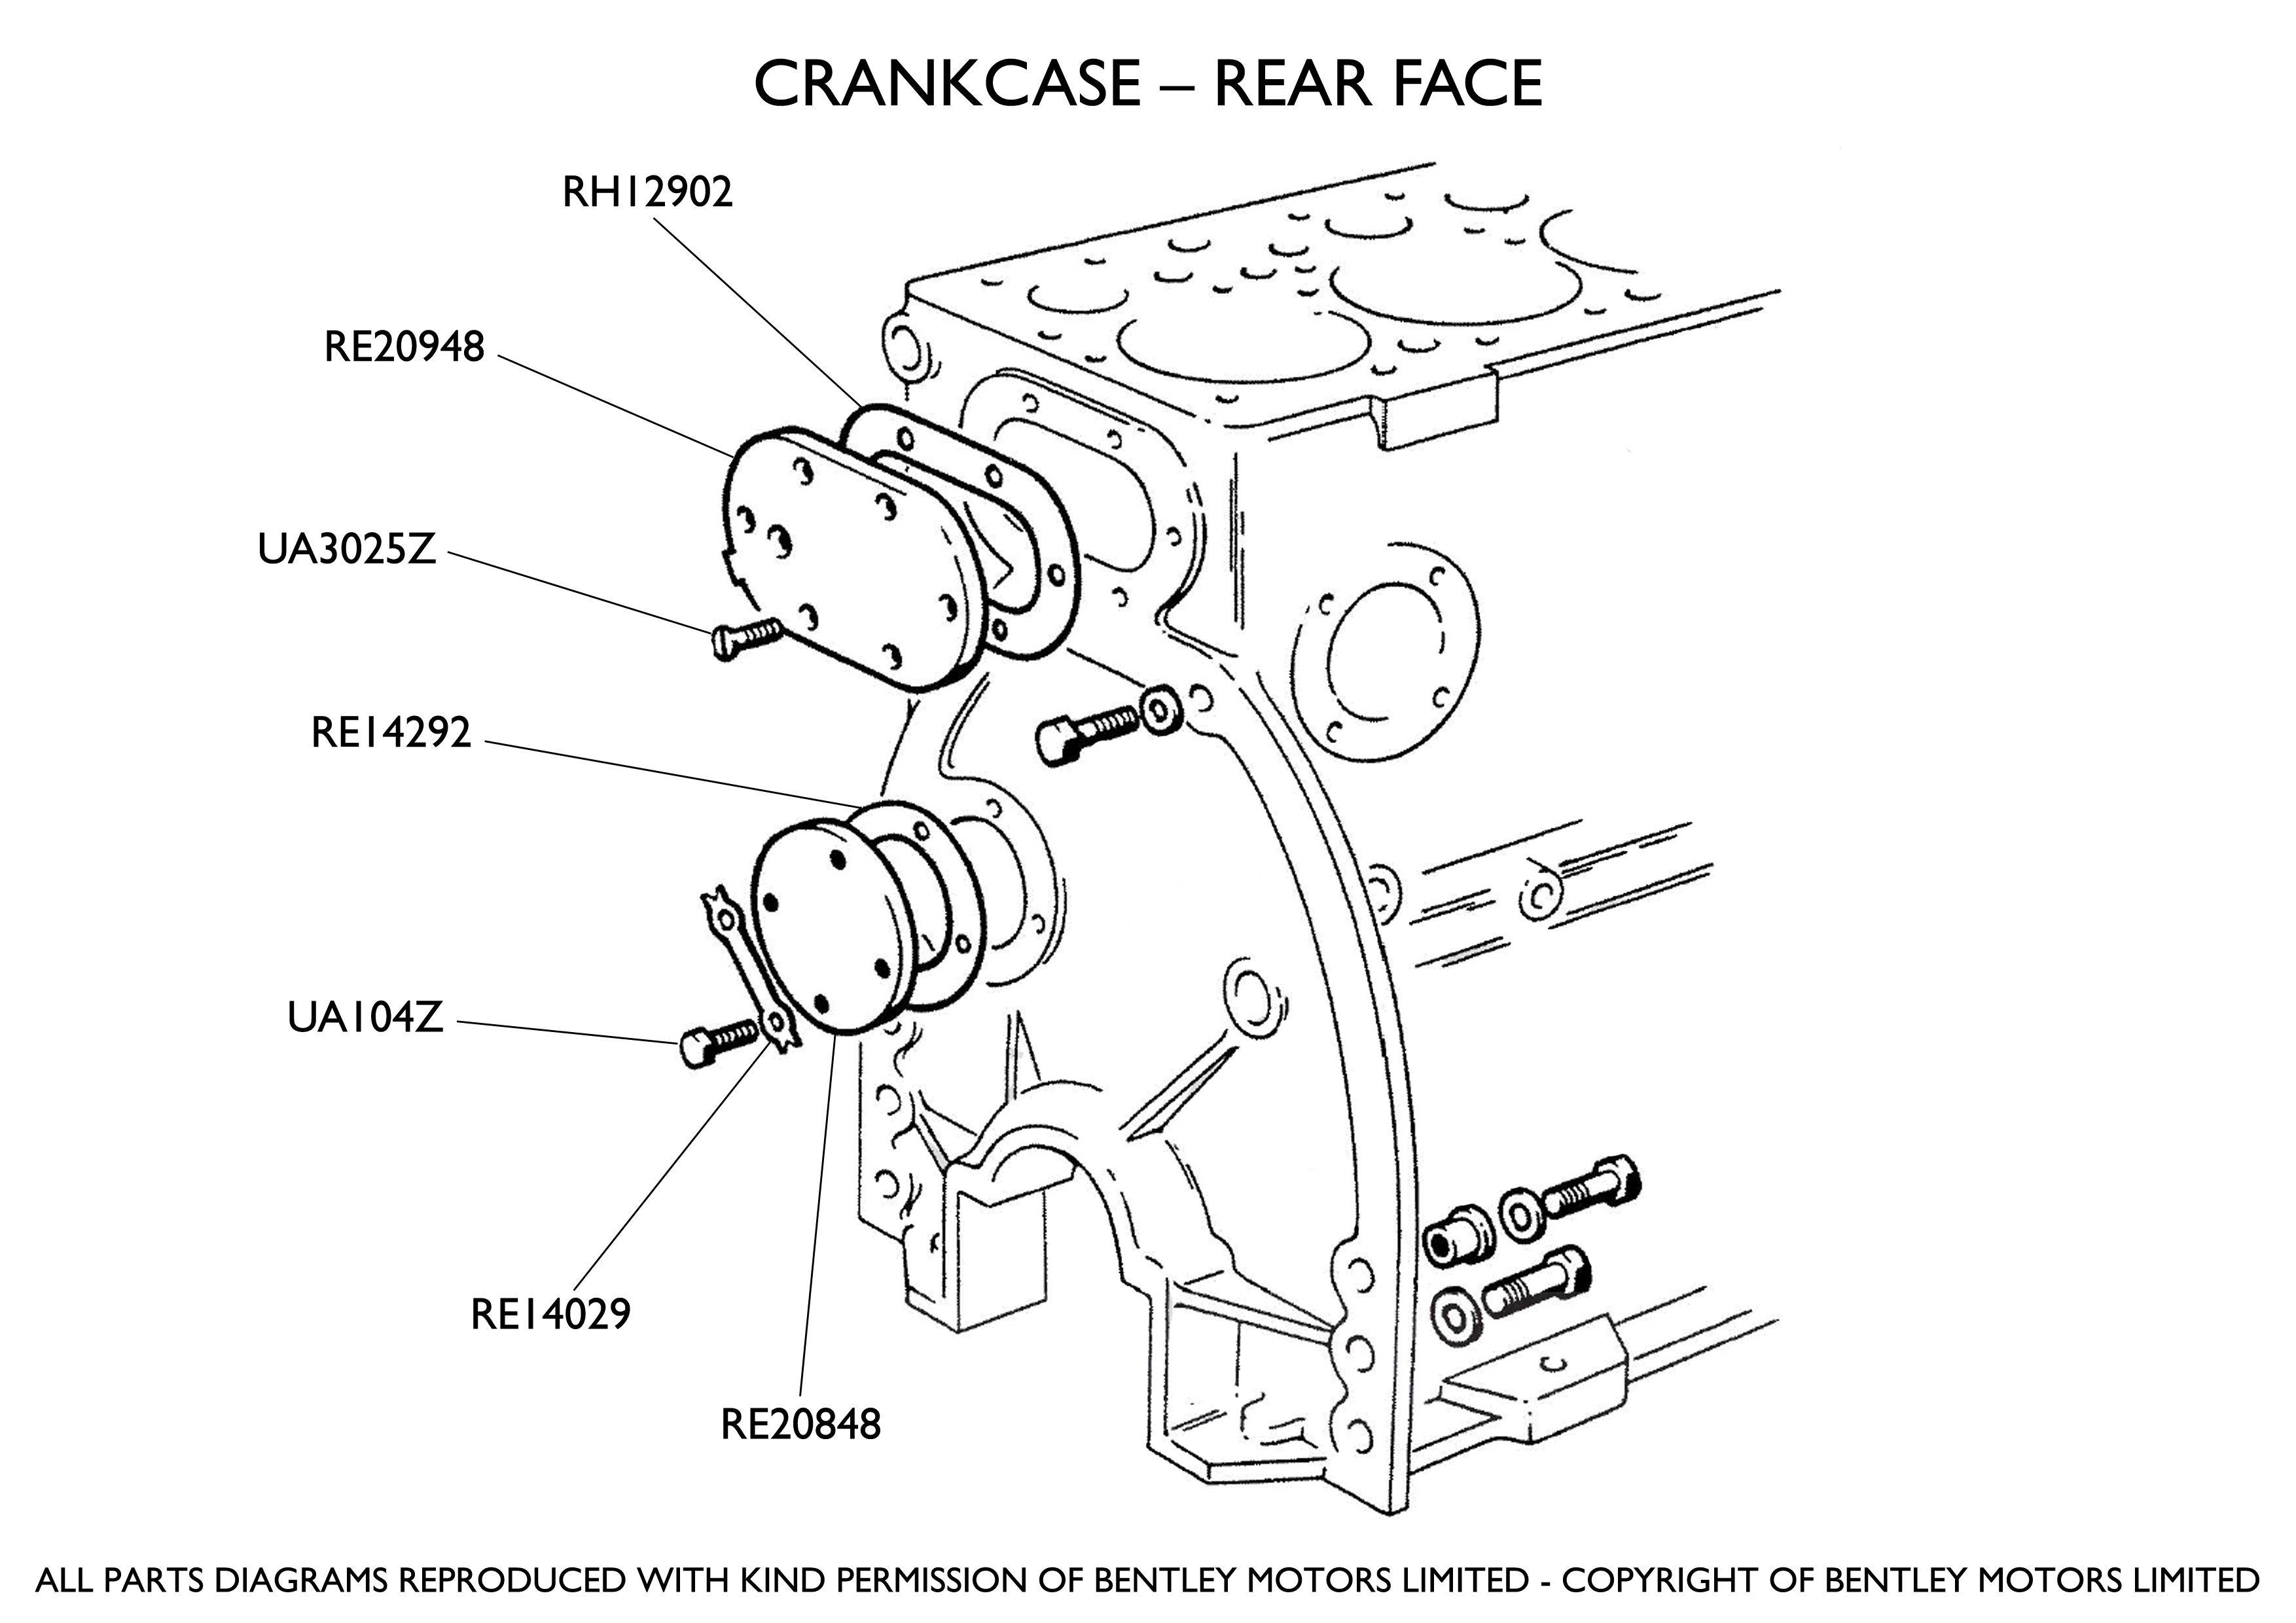 Crankcase - Rear Face